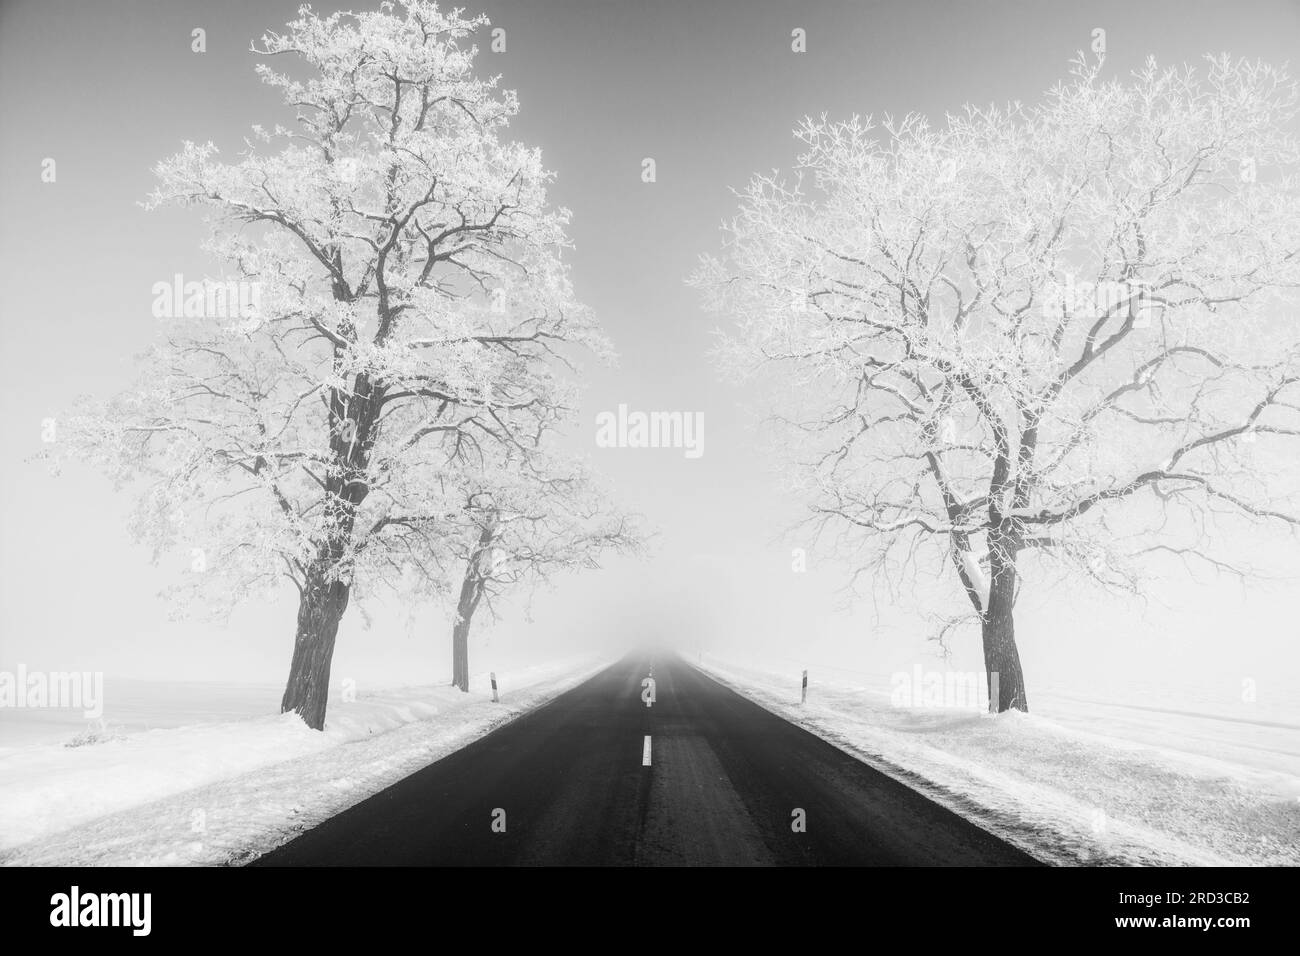 deux arbres près de la route symétriquement, par temps brumeux et enneigé d'hiver. image en noir et blanc. Banque D'Images